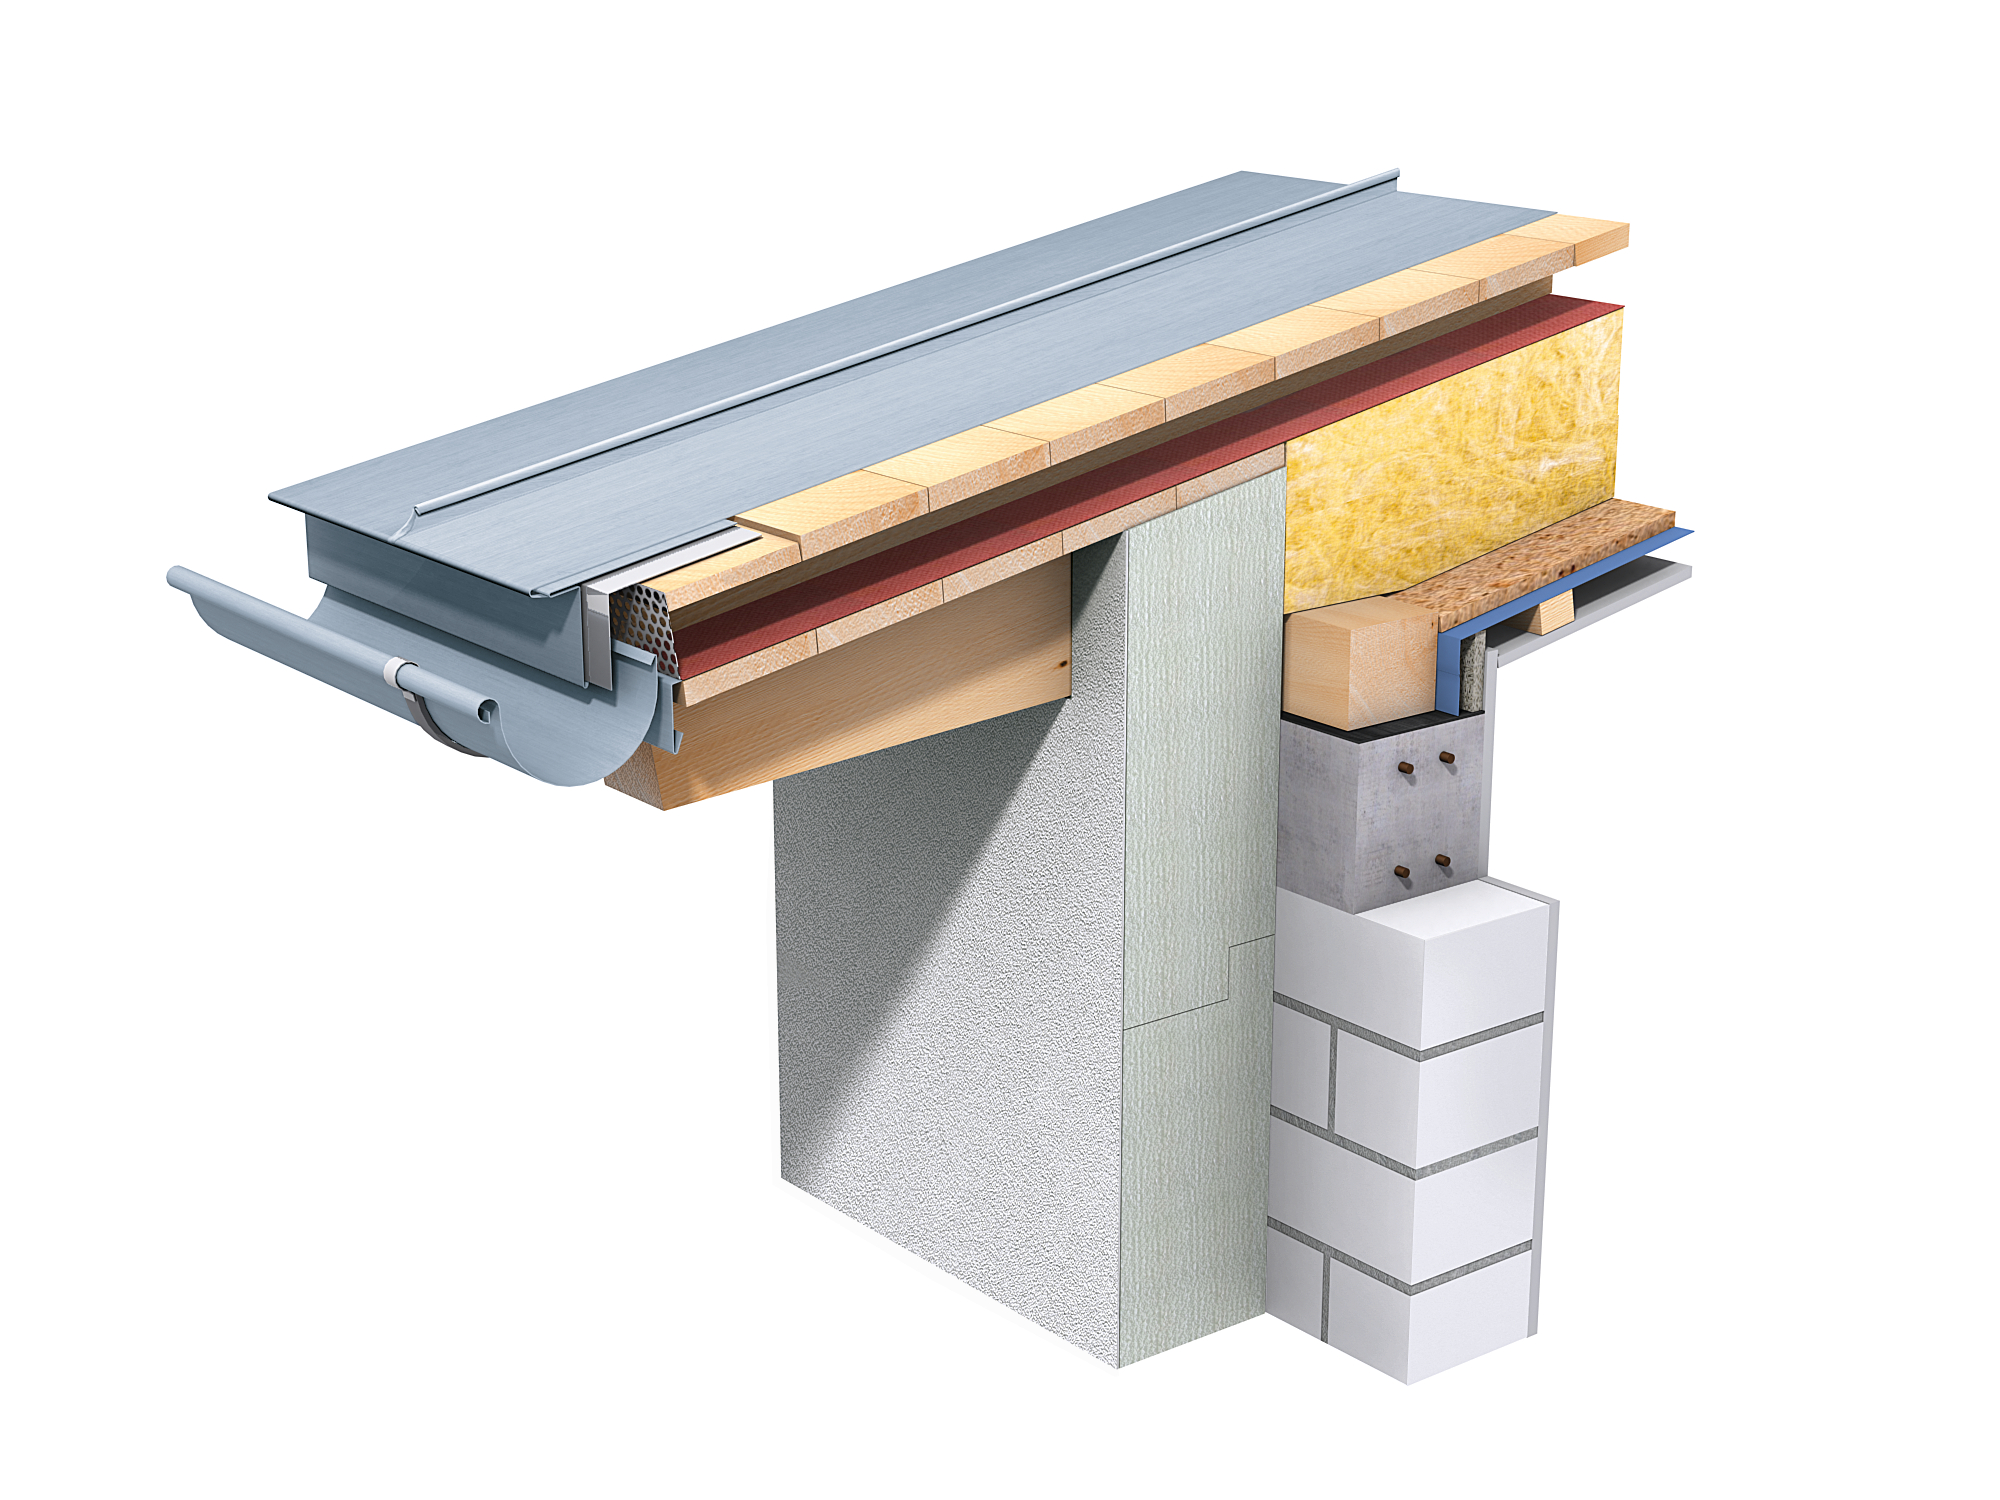 Podwójny rąbek stojący można stosować do dachów o nachyleniu od 5°